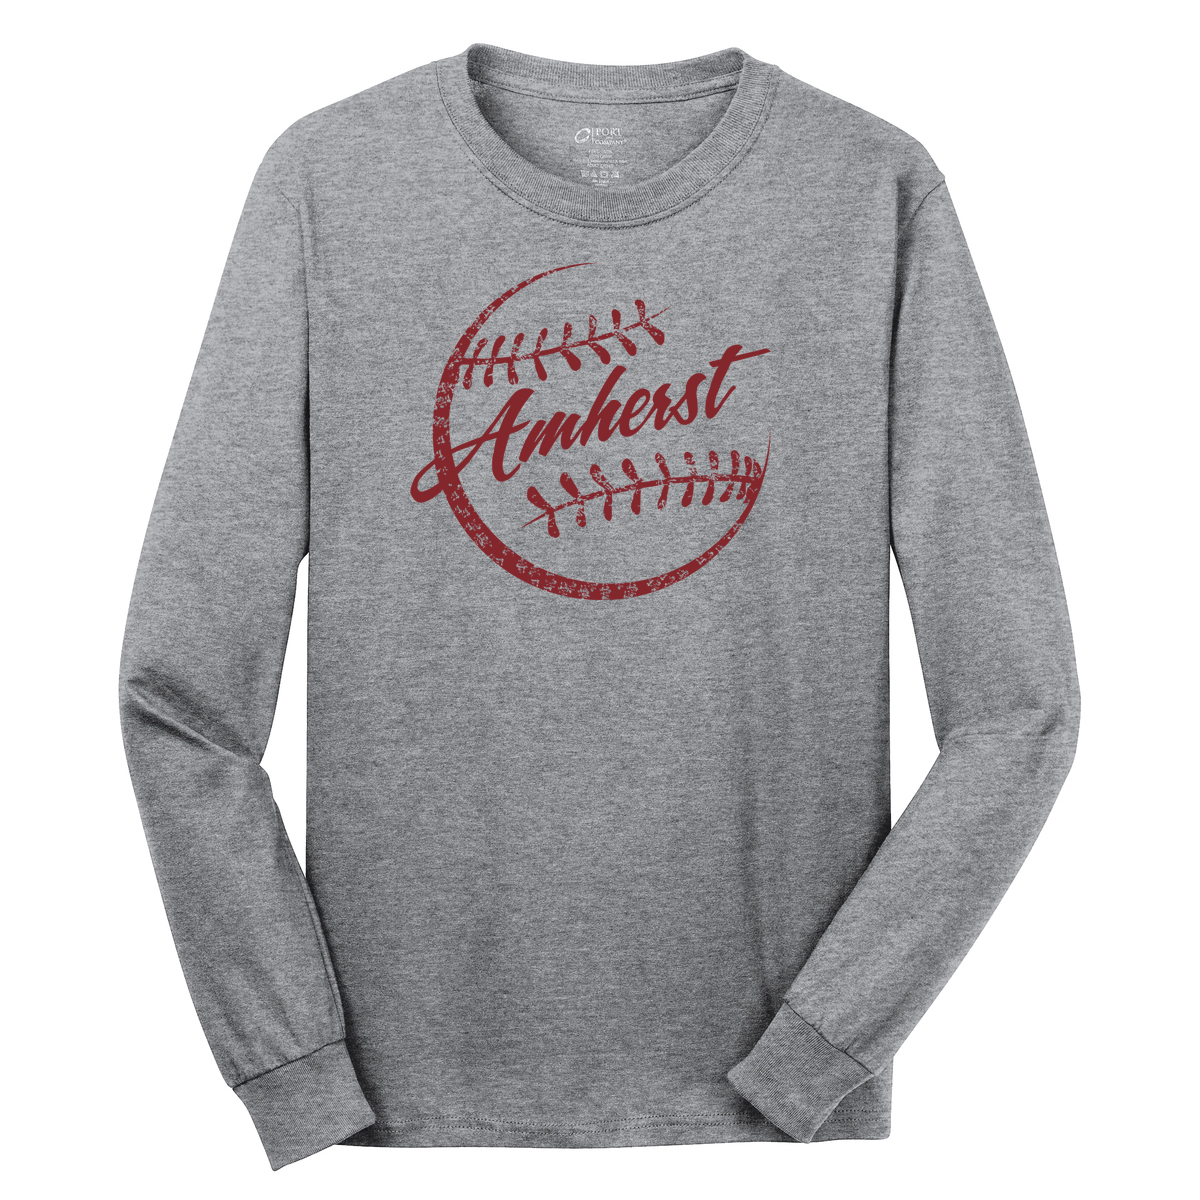 Amherst  Softball Cotton Long Sleeve Shirt